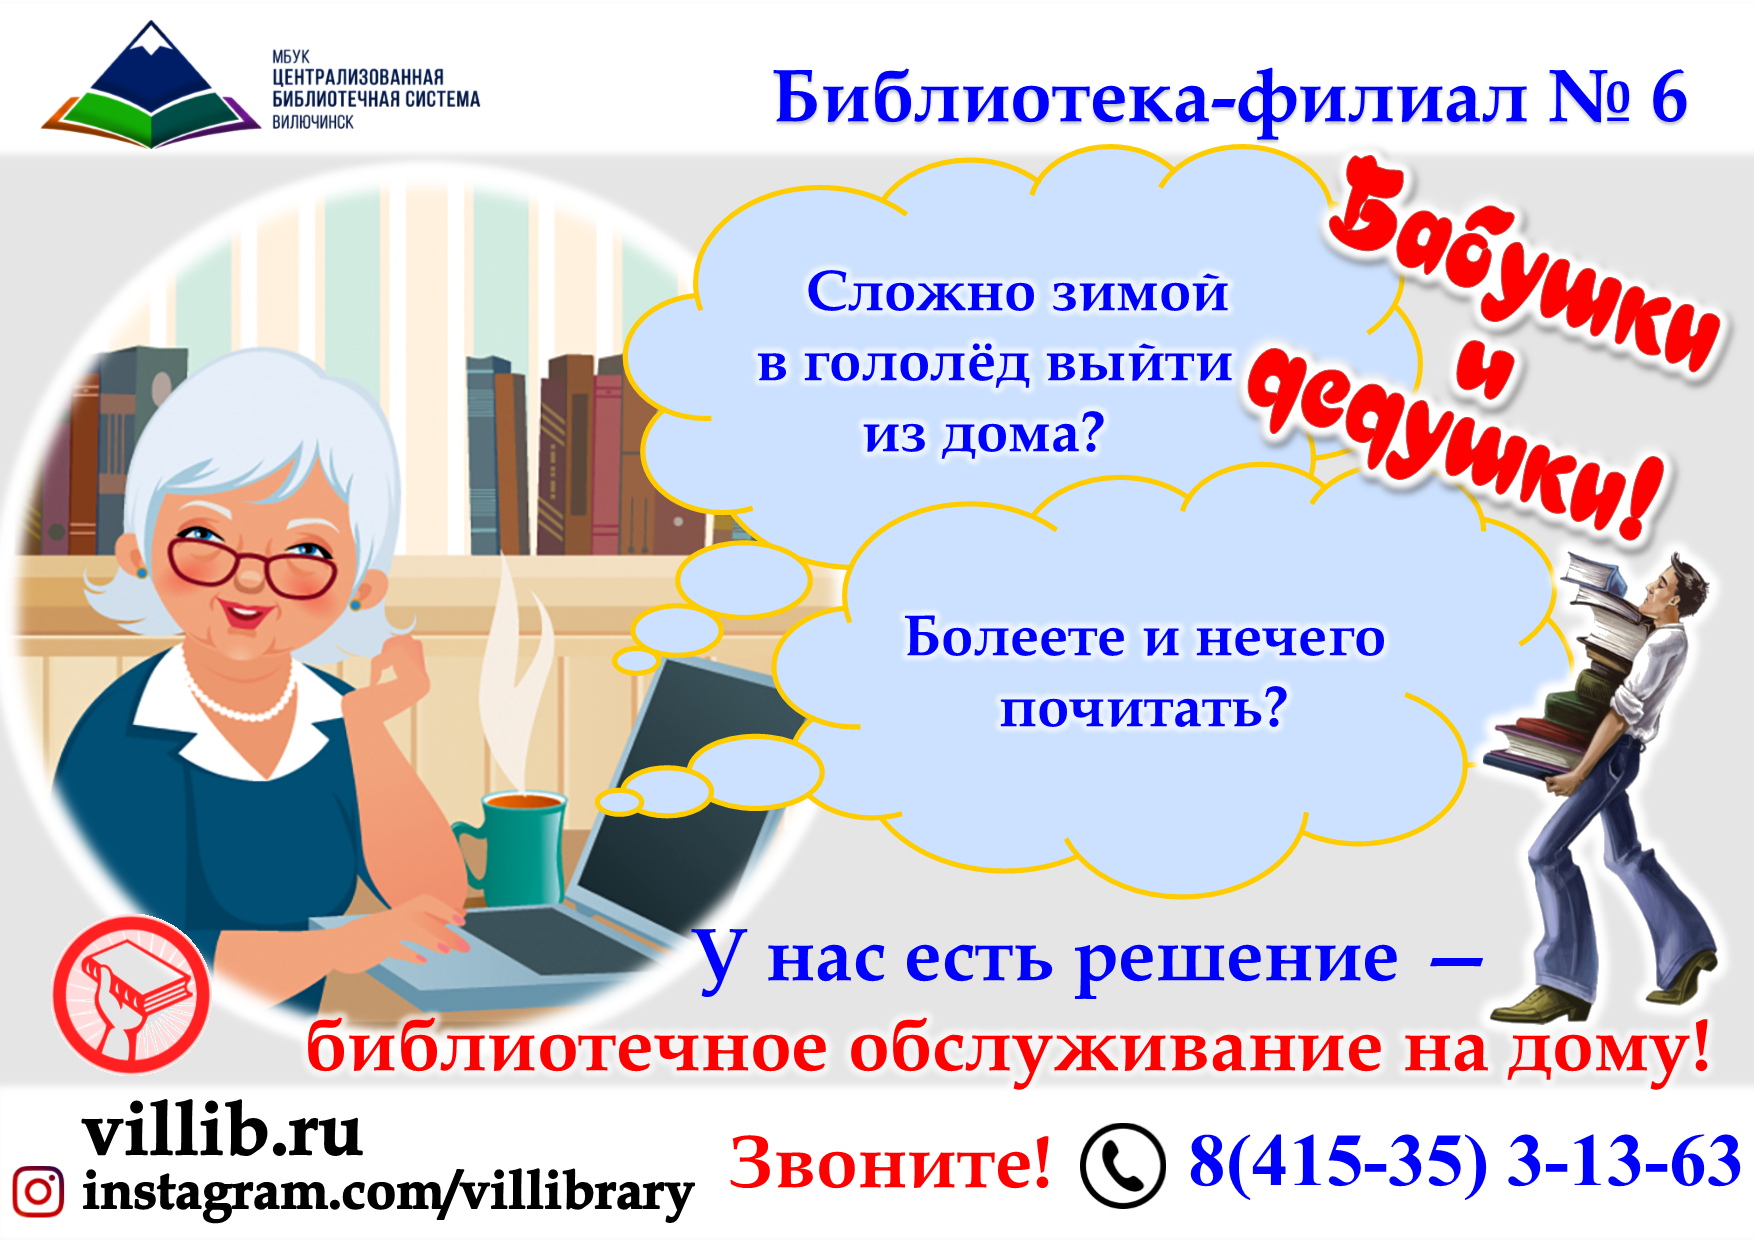 Работа для пенсионеров на неполный. Реклама работы библиотеки. Реклама клубов в библиотеке. Работа с пожилыми людьми в библиотеке. Работа в библиотеке с пожилыми.